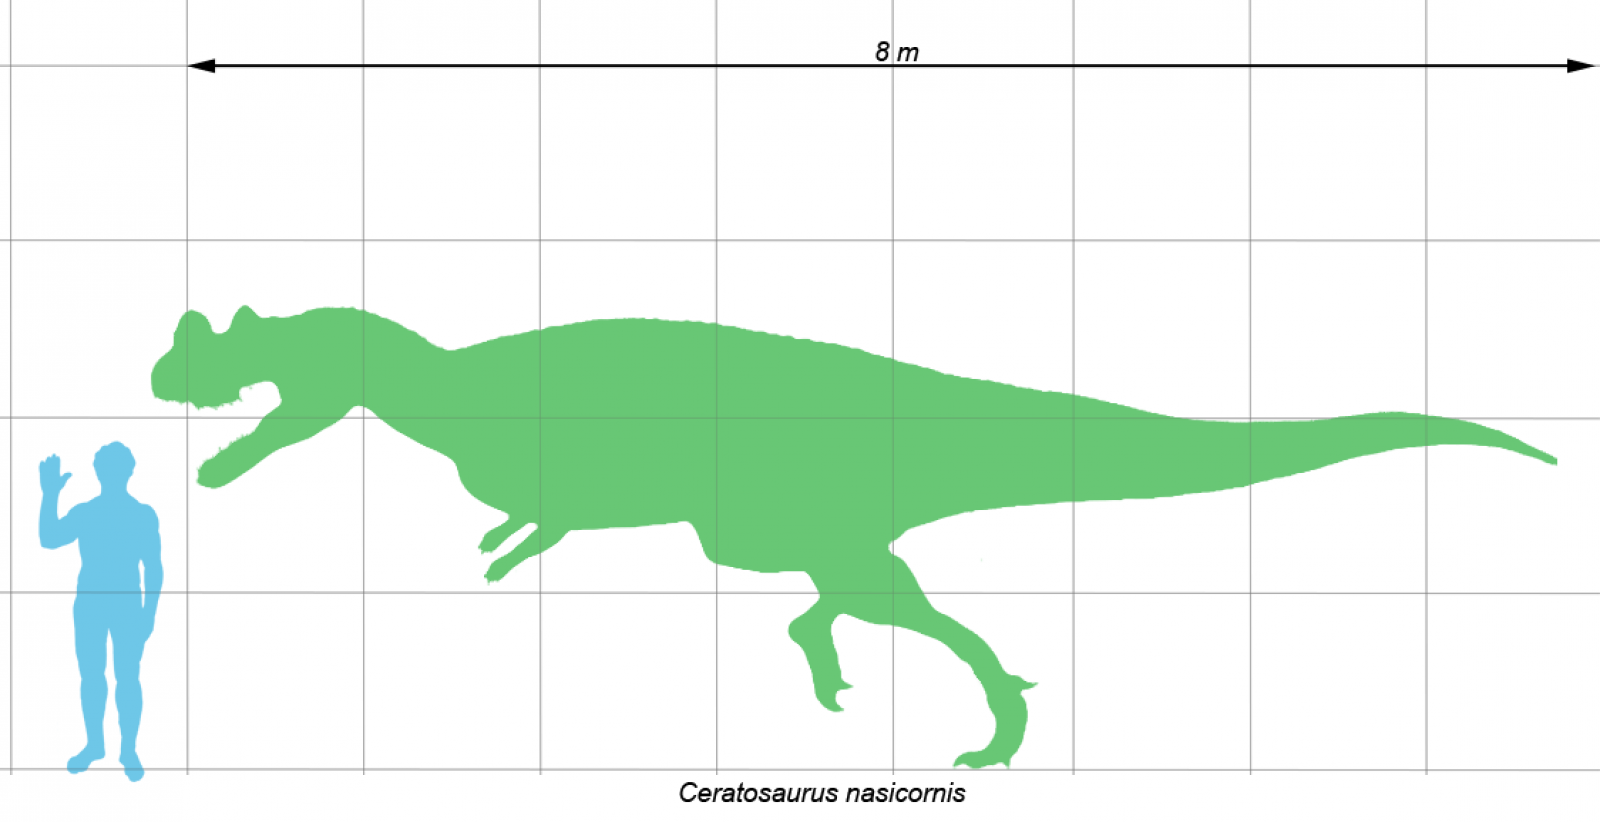 Escala de un dinosaurio ceratosaurio.